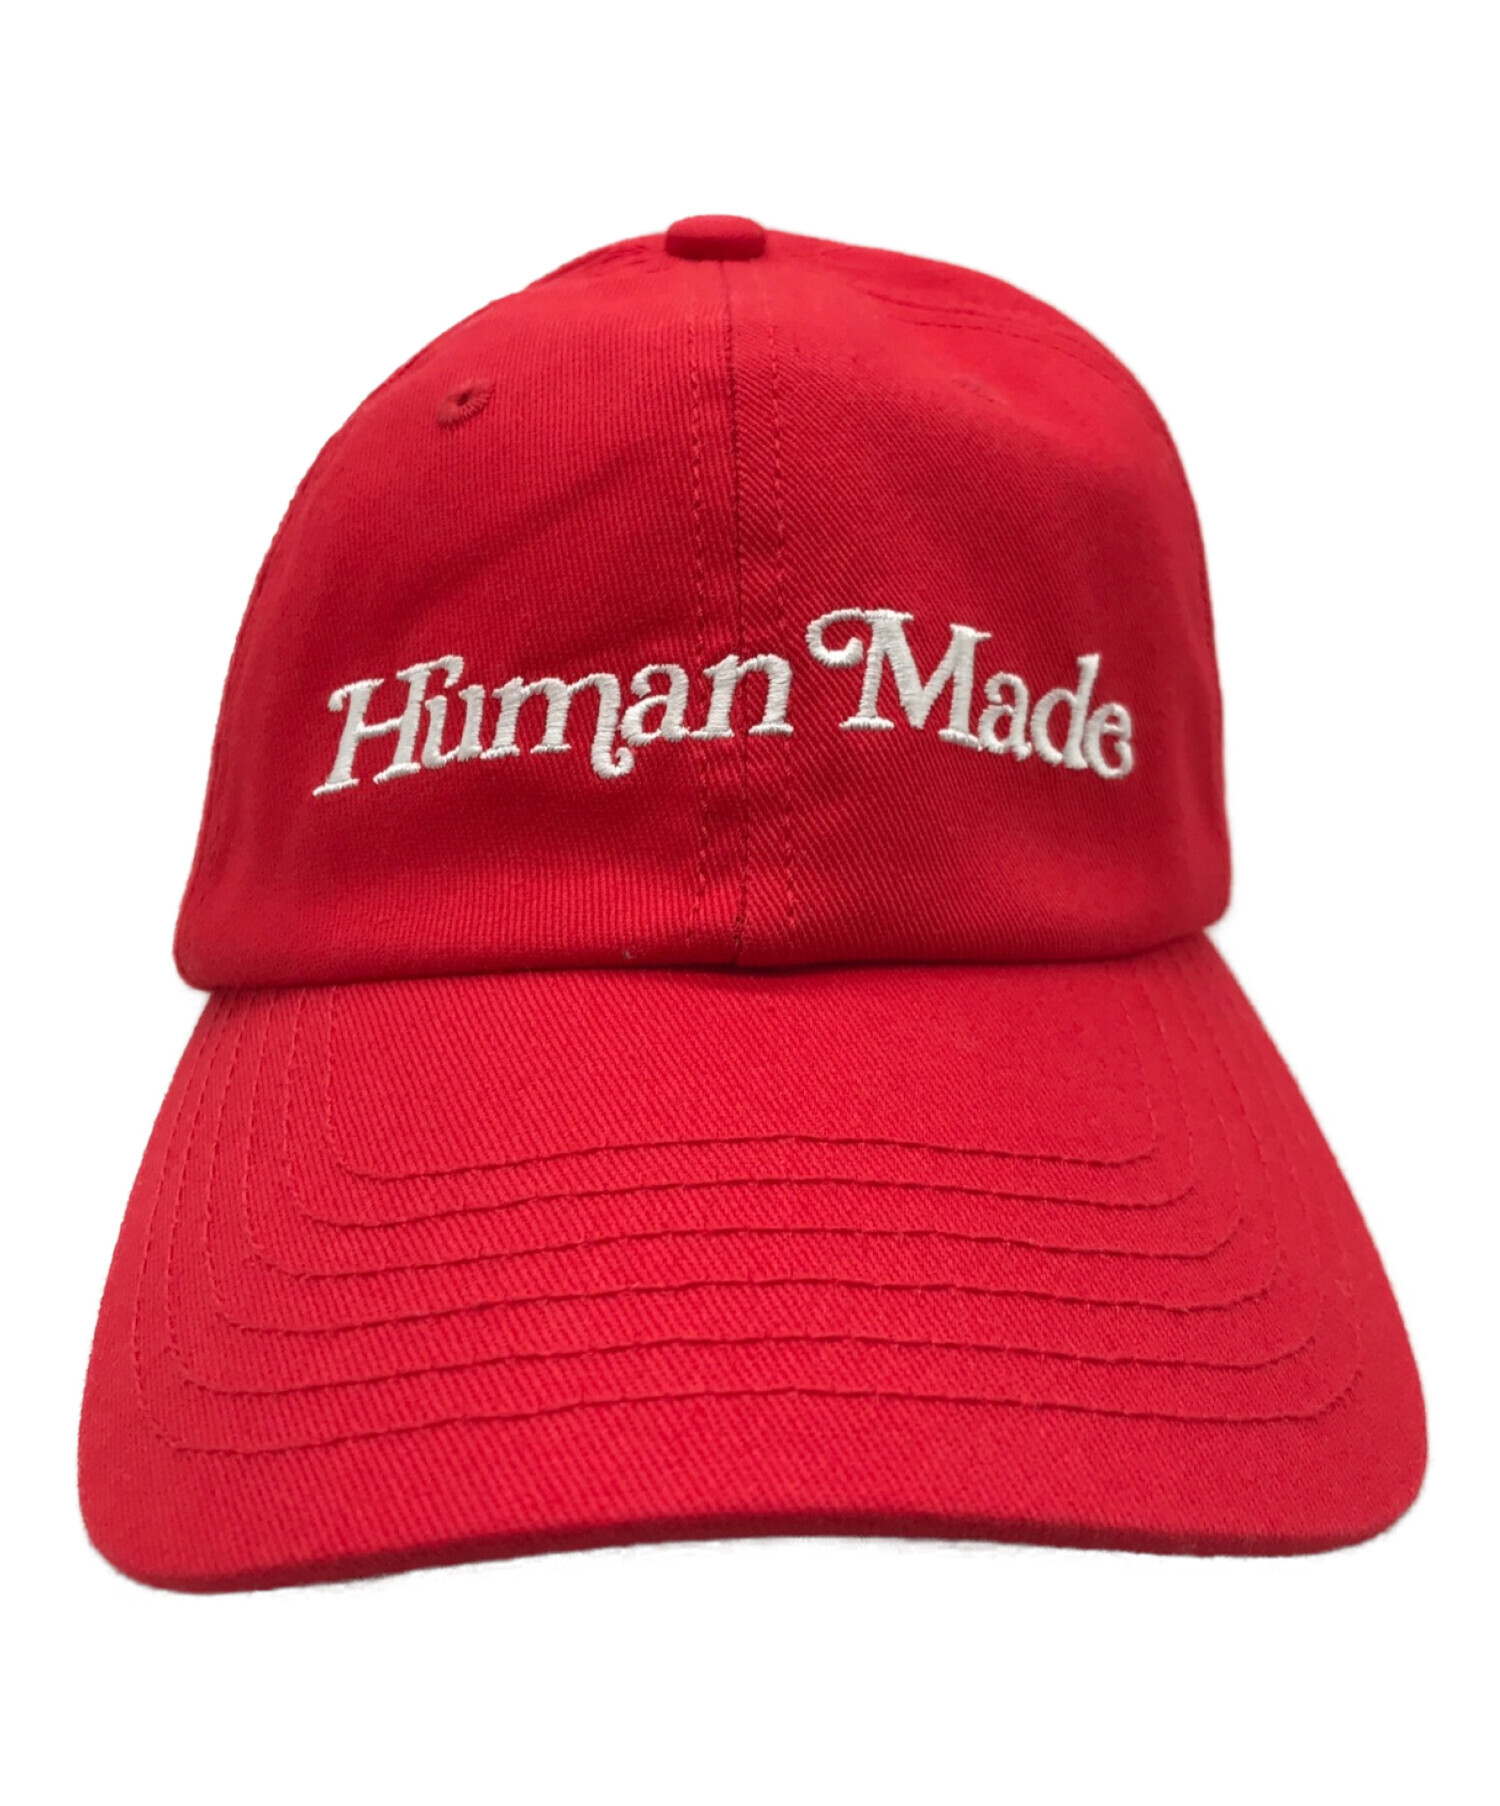 HUMAN MADE (ヒューマンメイド) GDC WHITE DAY 6 PANEL CAP レッド